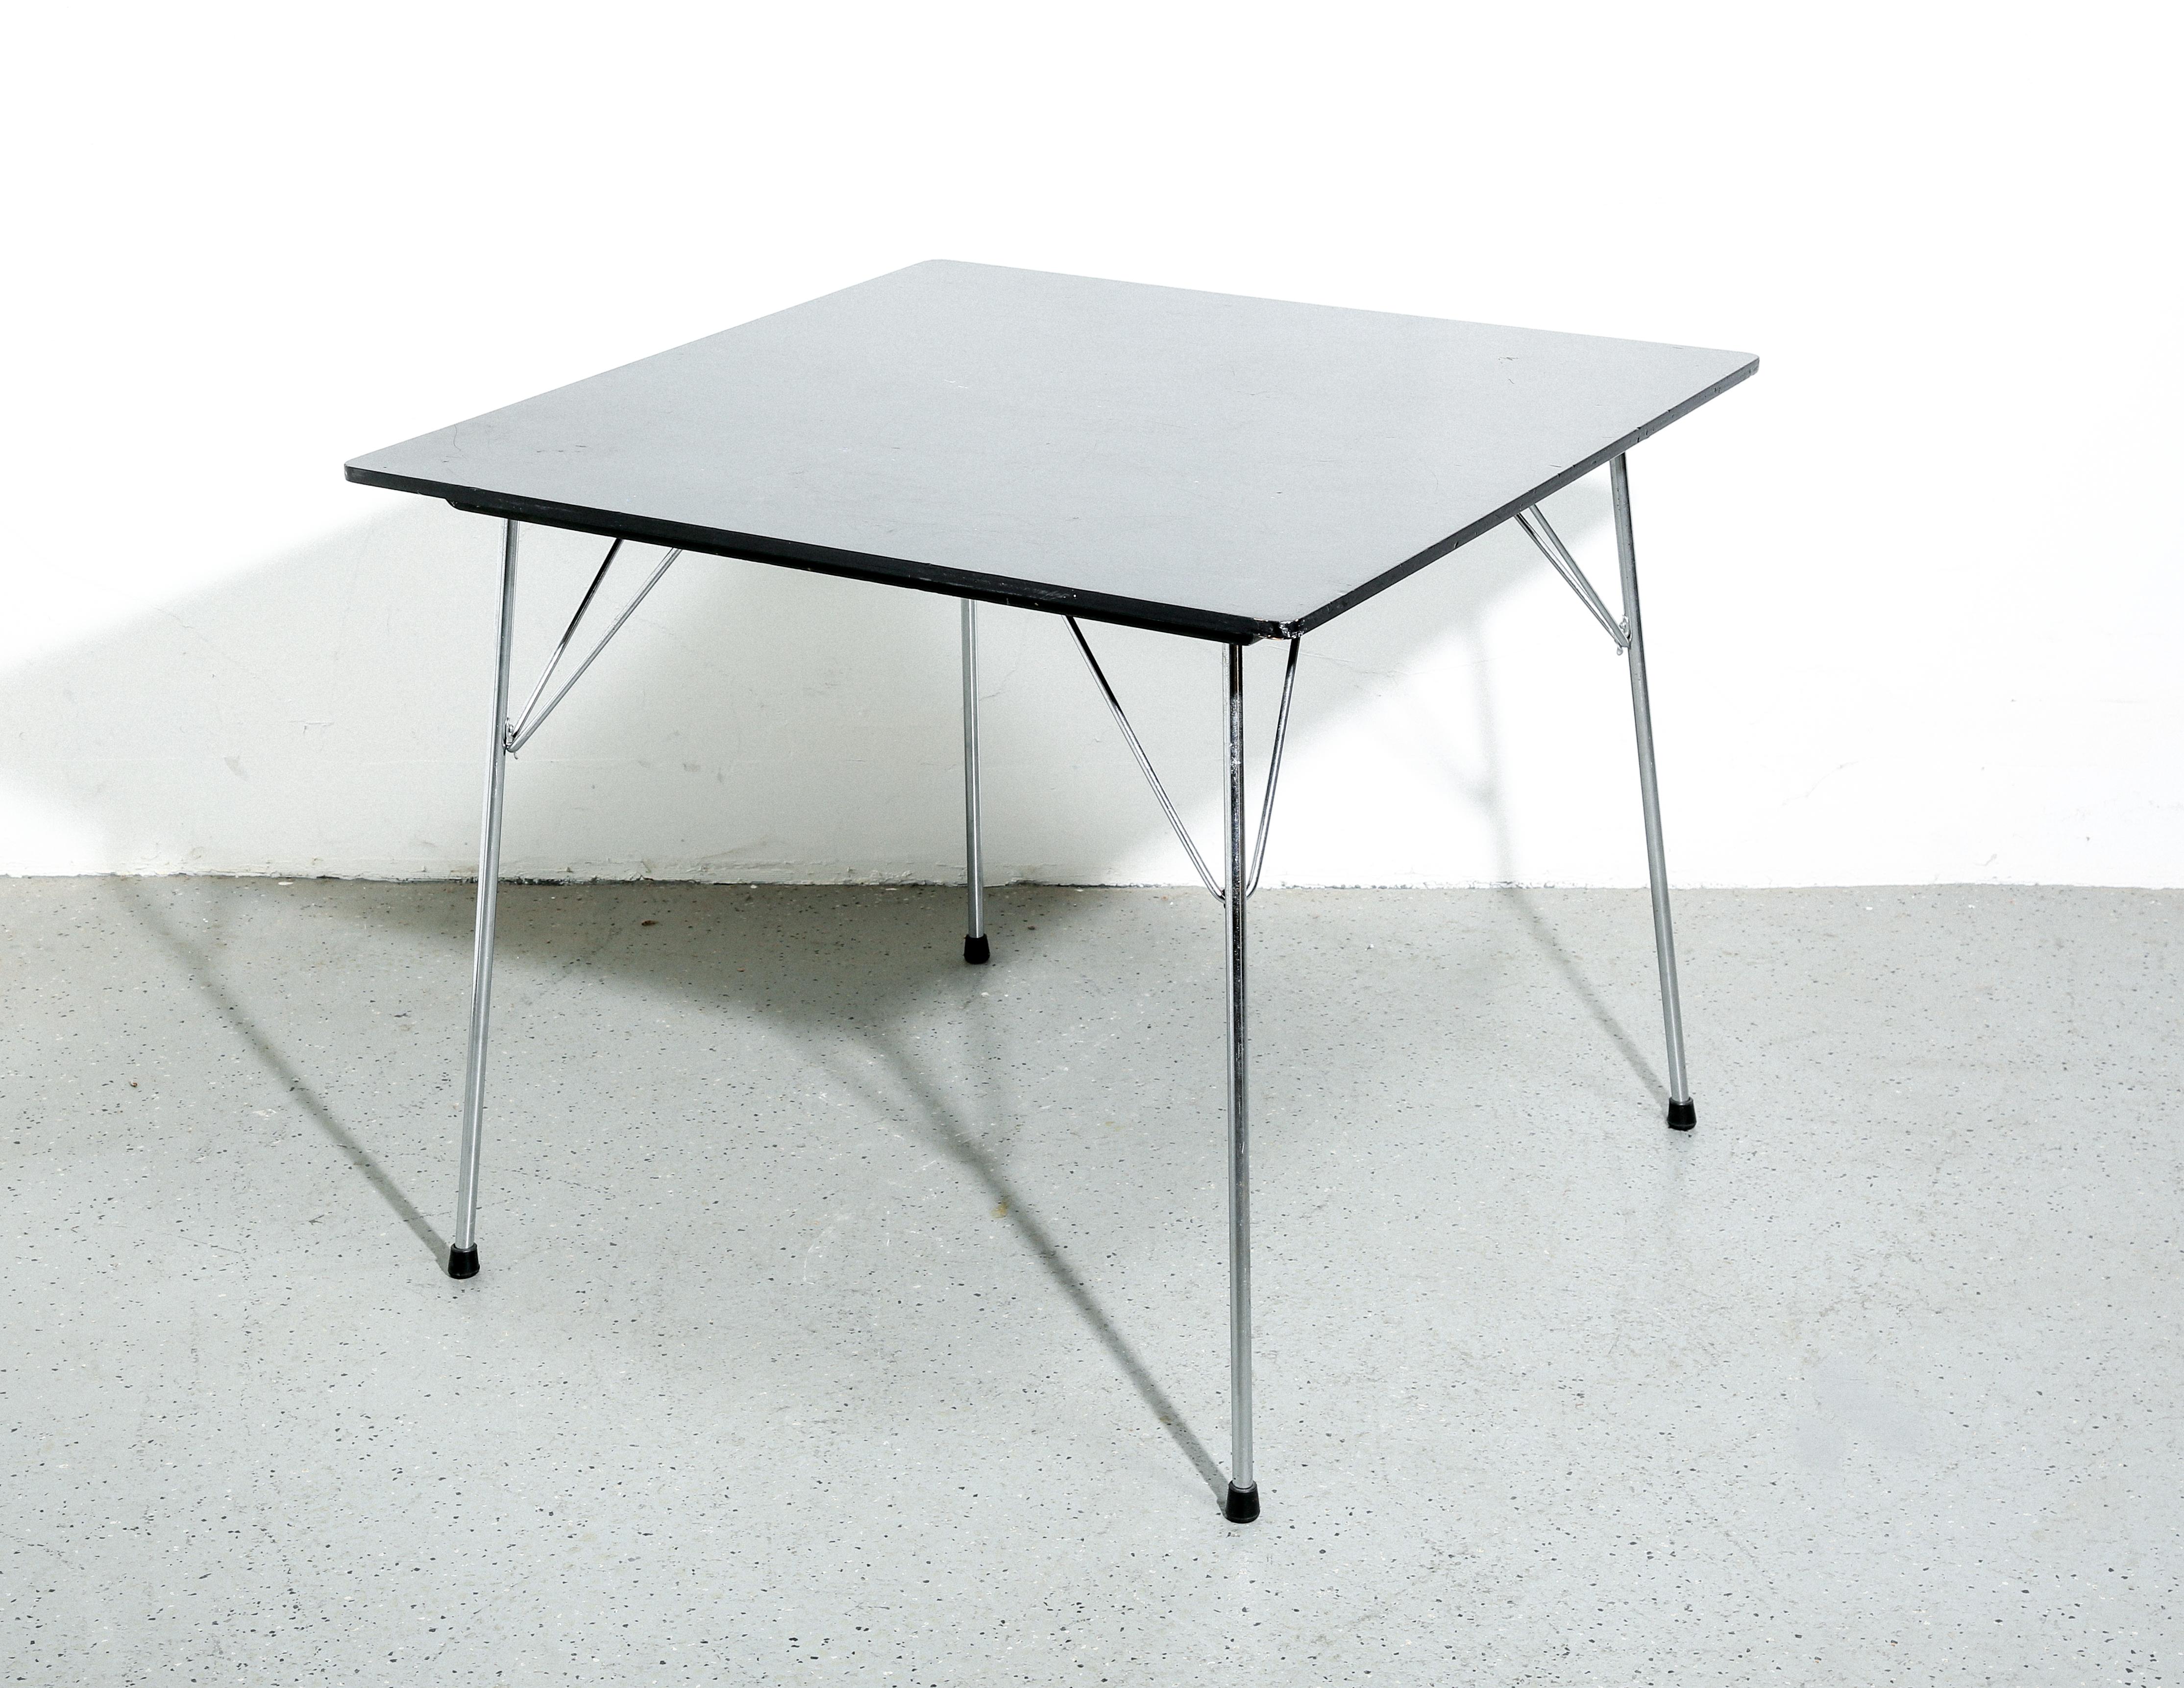 La table Eames DTM-2 (Dining Table Metal) est un exemple classique du design moderne du milieu du siècle, reflétant l'esthétique à la fois simple et sophistiquée de ses créateurs, Charles et Ray Eames. Introduite dans les années 1950, cette table a